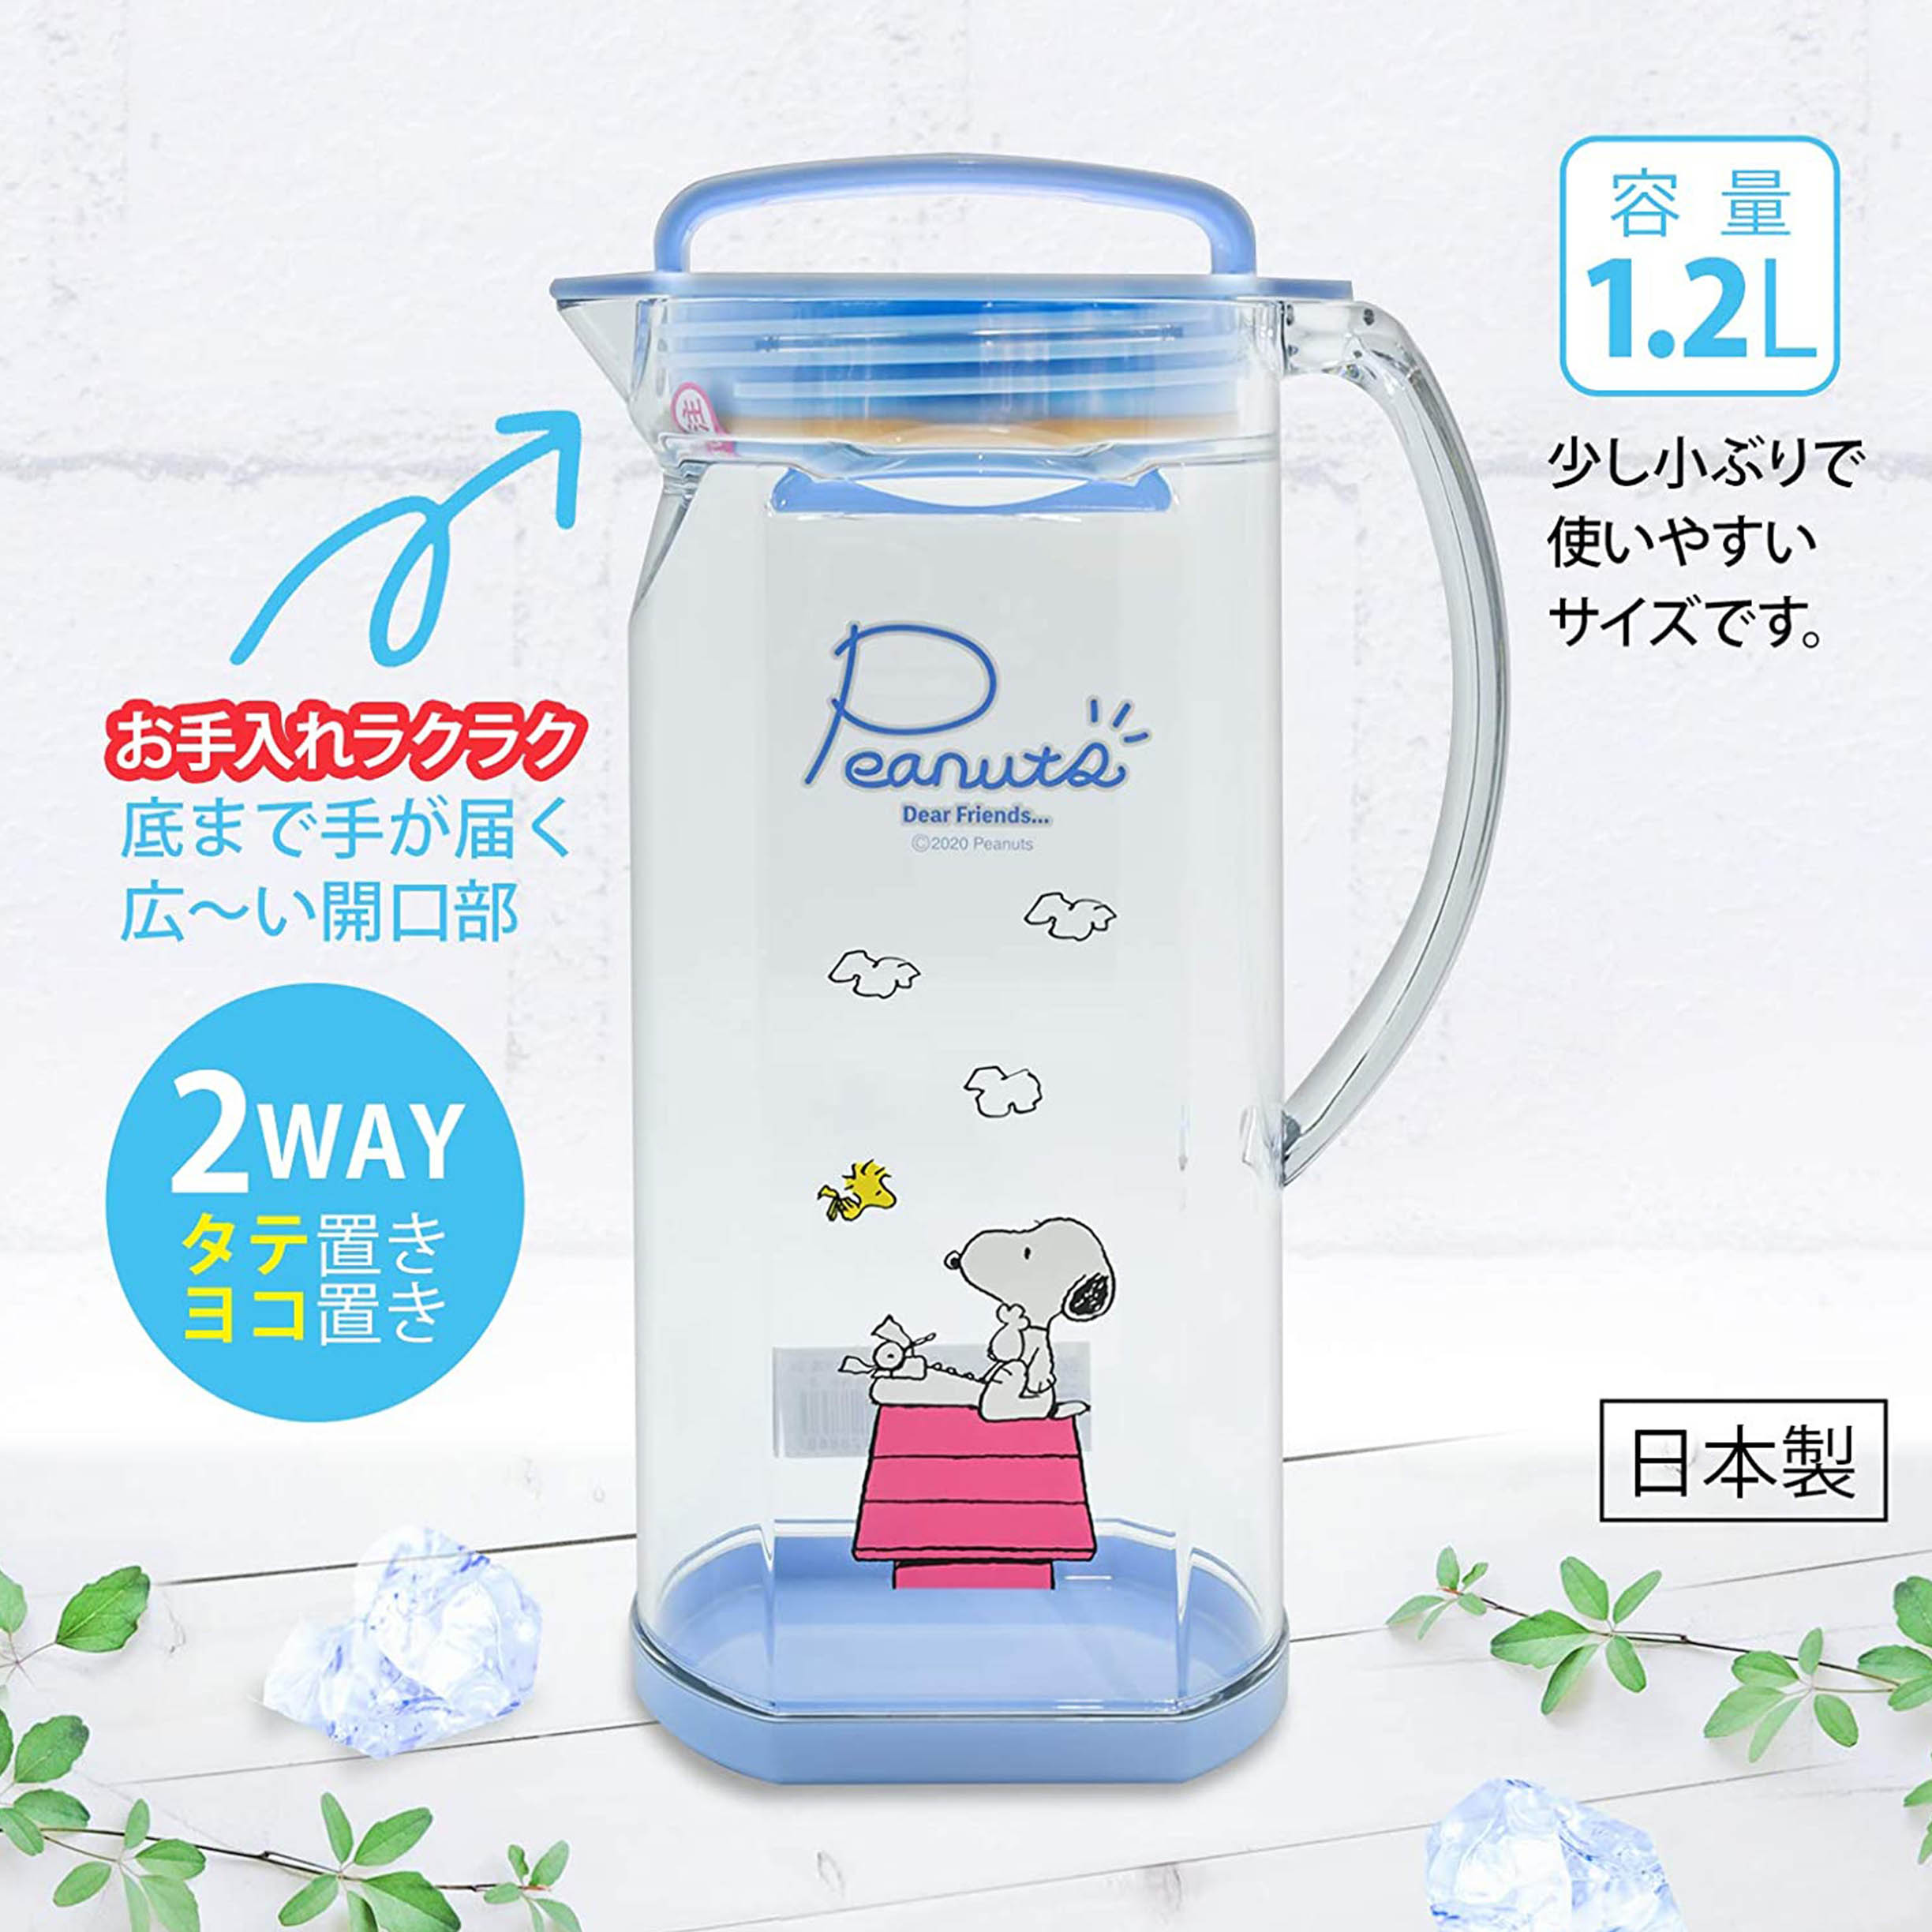 單耳塑膠冷水壺 日本 1.2L-史努比 SNOOPY PEANUTS 日本進口正版授權